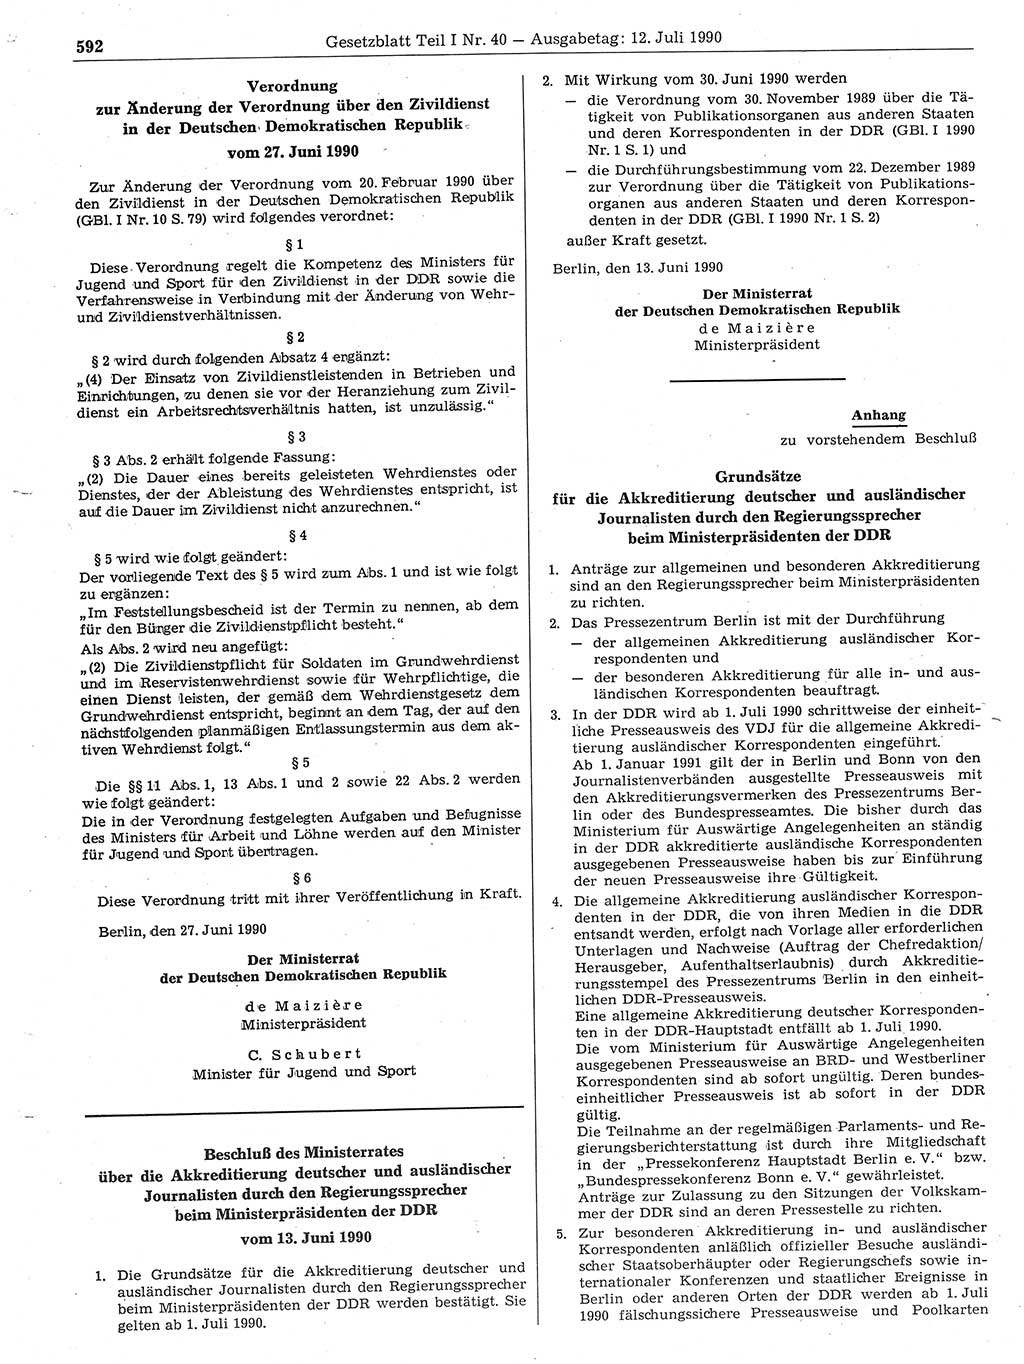 Gesetzblatt (GBl.) der Deutschen Demokratischen Republik (DDR) Teil Ⅰ 1990, Seite 592 (GBl. DDR Ⅰ 1990, S. 592)